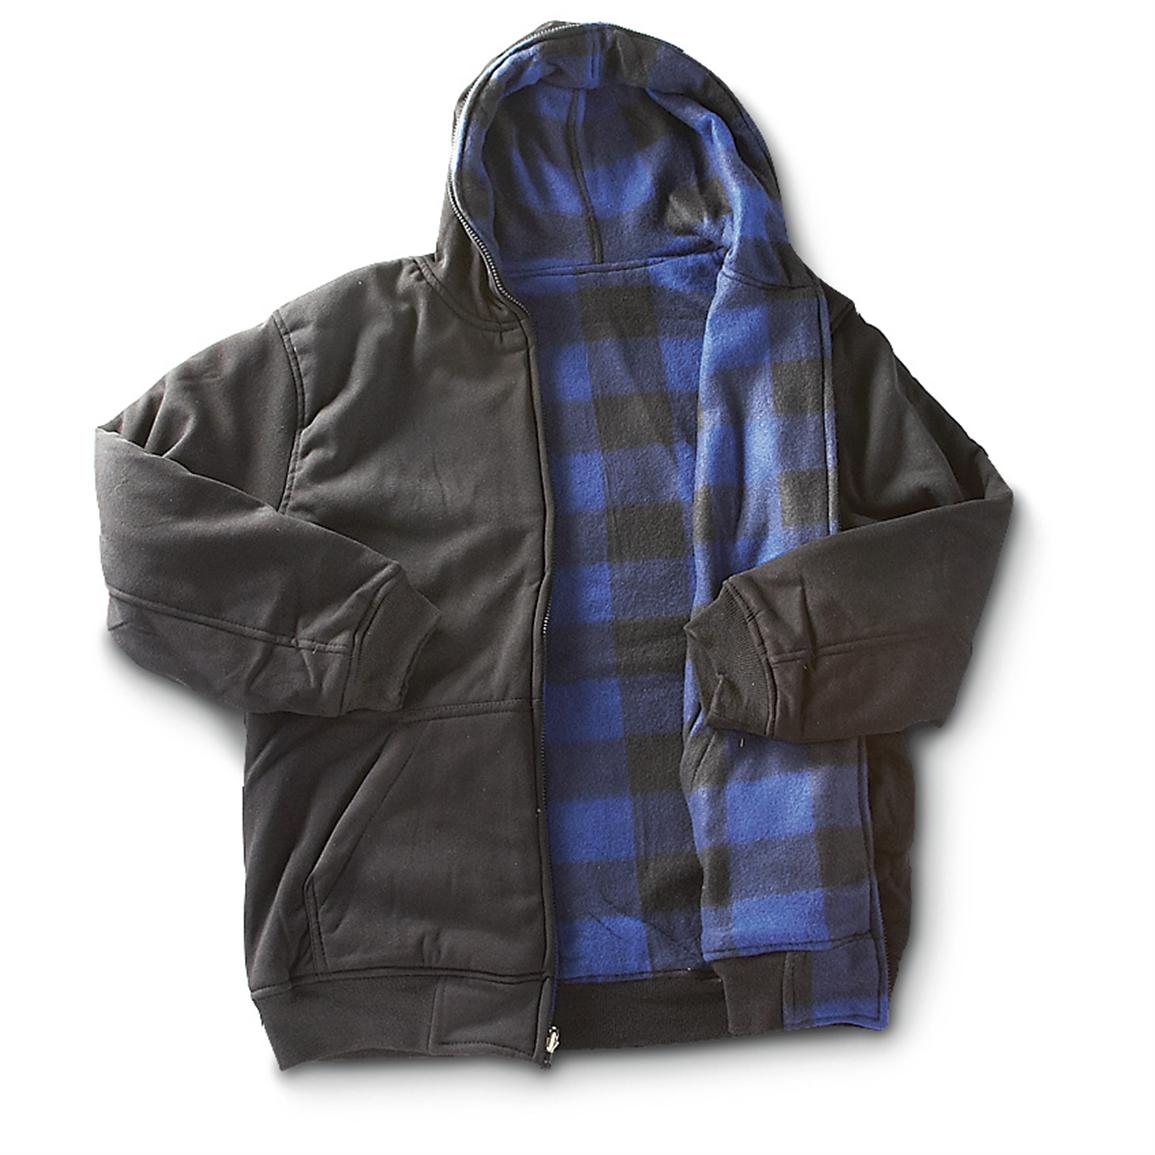 Reversible Full - zip Hooded Jacket - 282081, Sweatshirts & Hoodies at ...